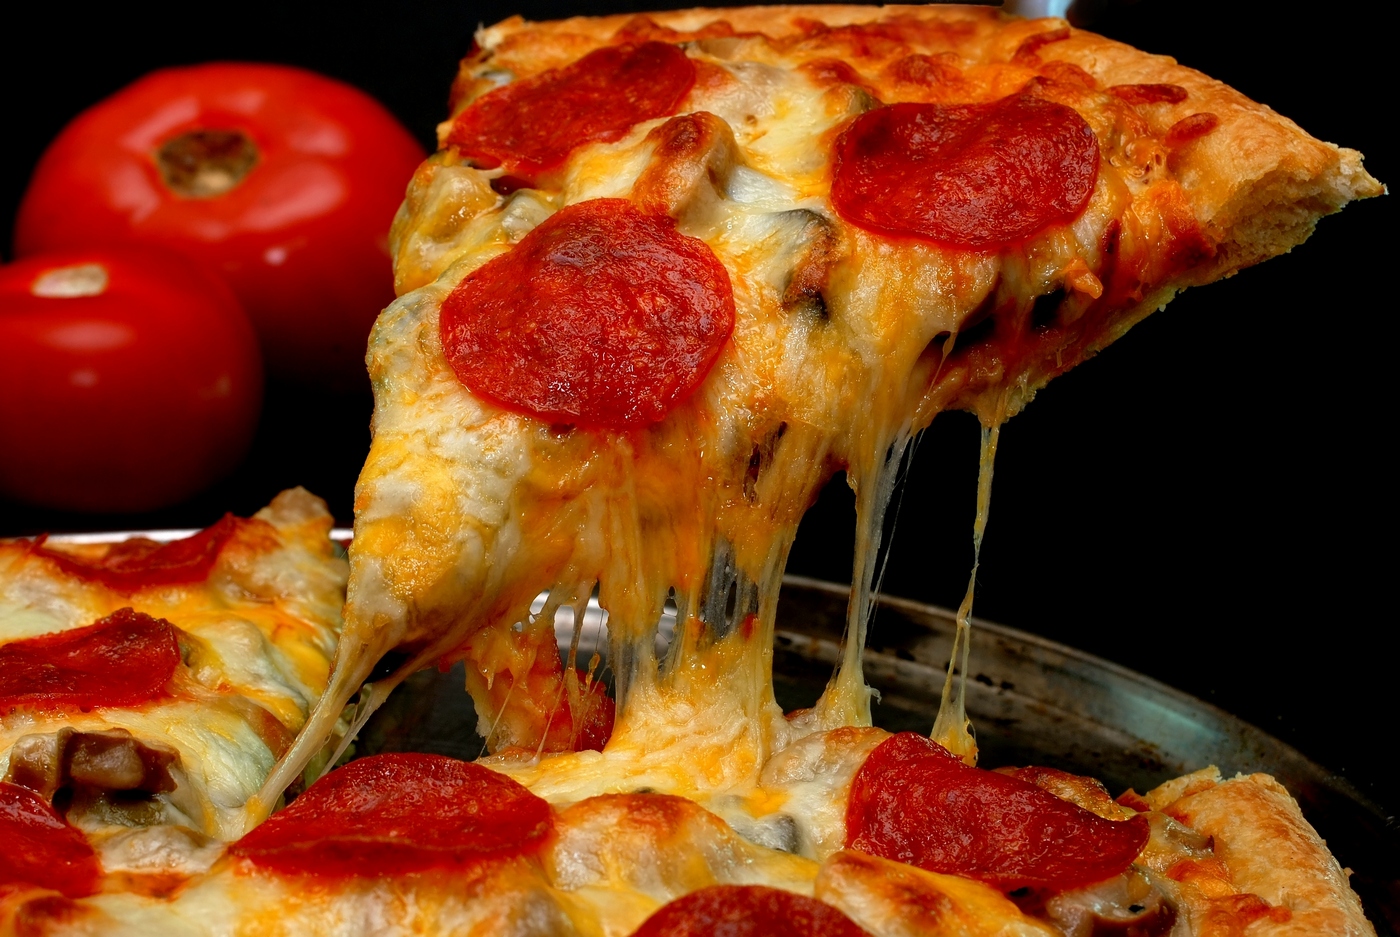 america-ordinare-pizza-aggressione-911